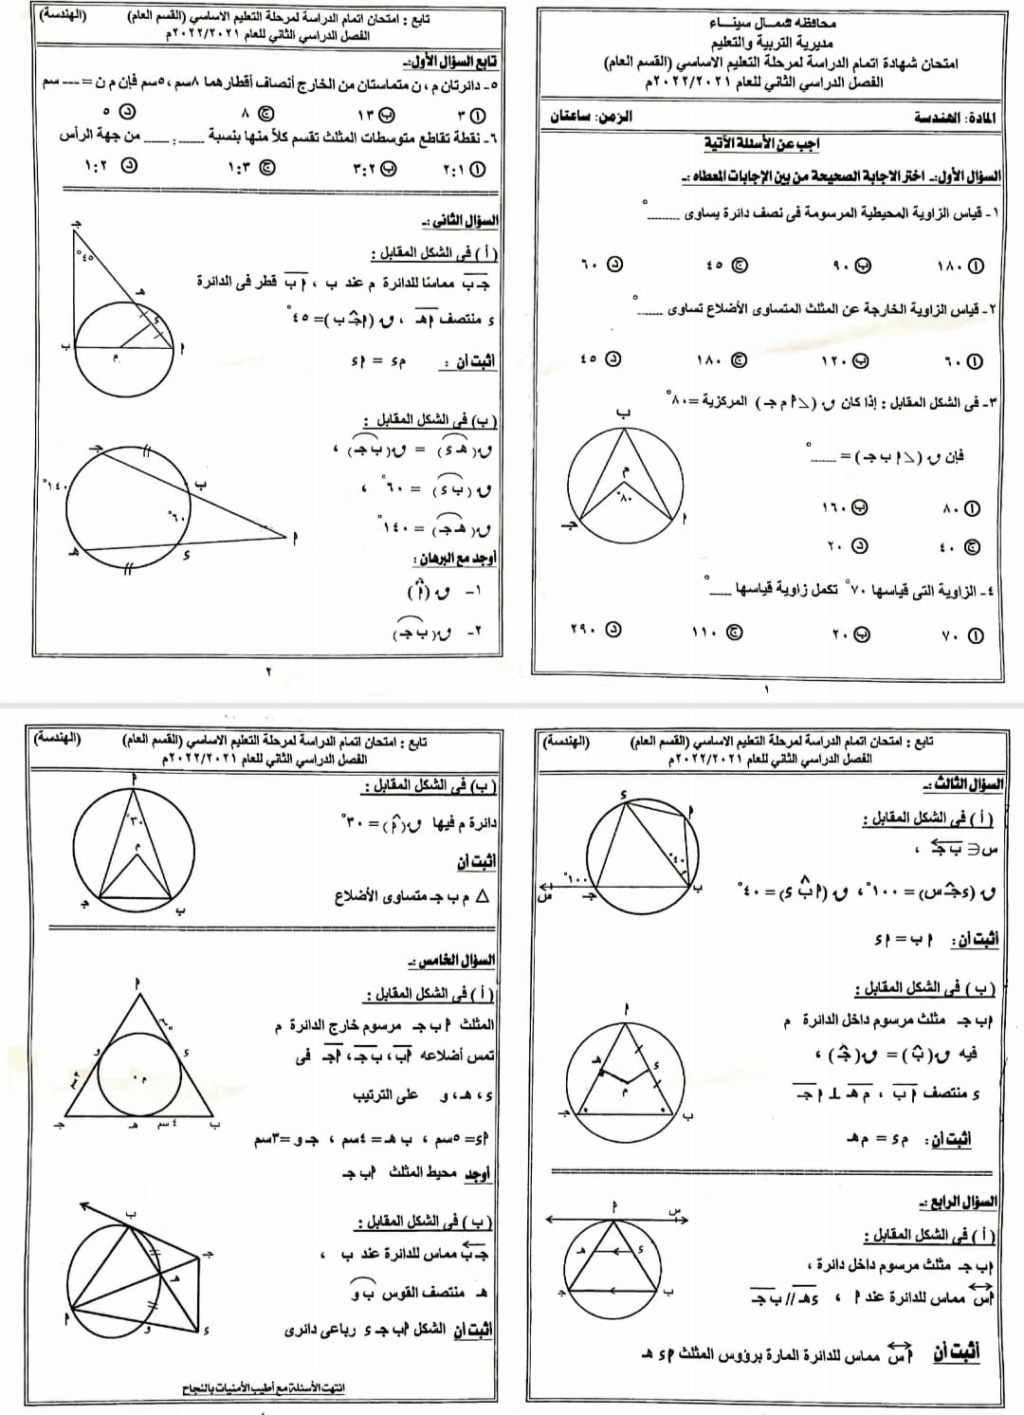  امتحان الهندسة للصف الثالث الاعدادي ترم ثاني 2022 محافظة شمال سيناء 5163